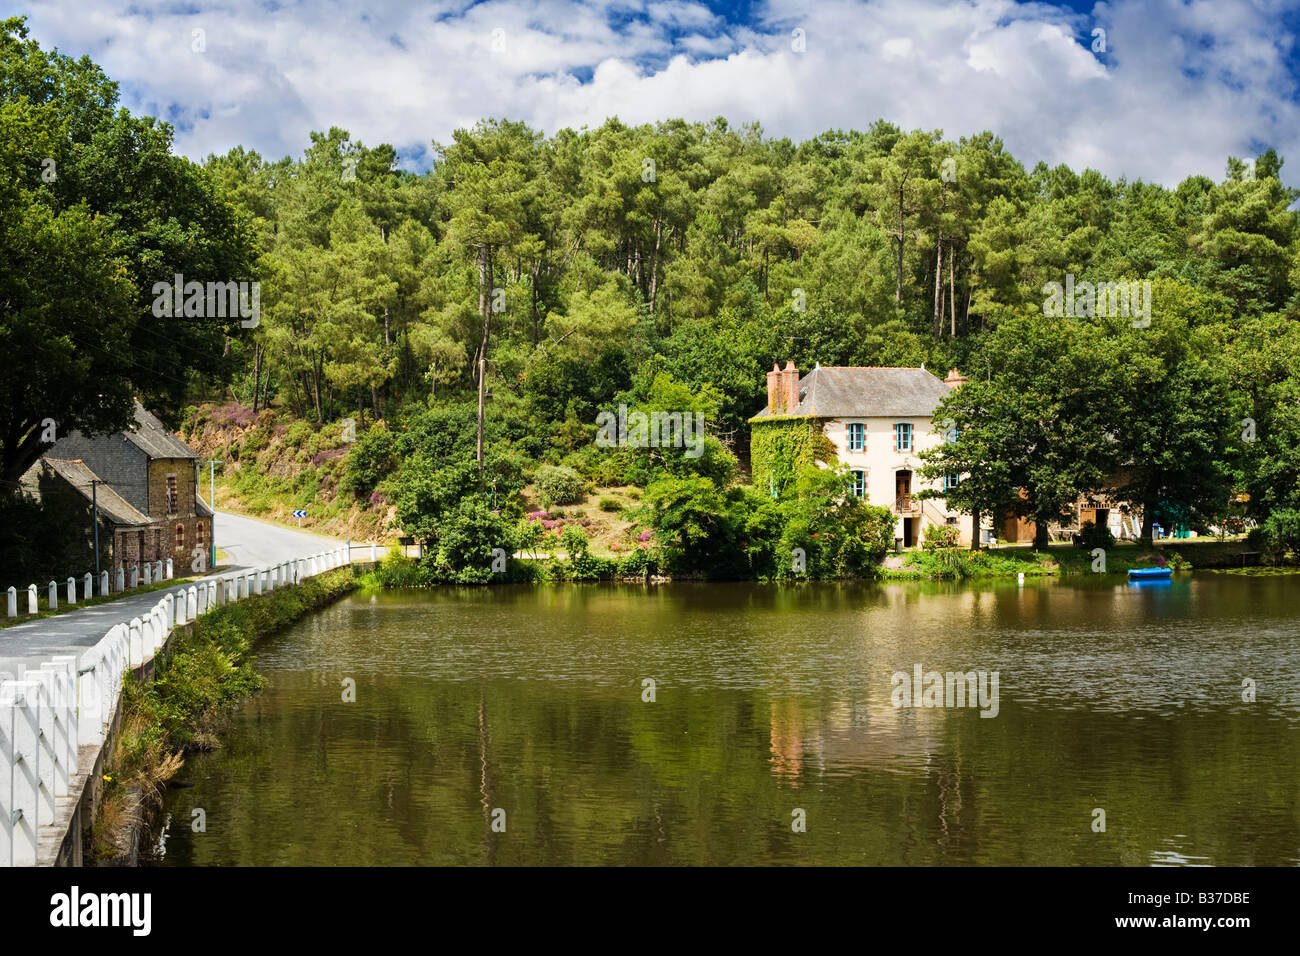 Maison française, Bretagne, France situé près d'un lac dans les forêts du Morbihan Banque D'Images